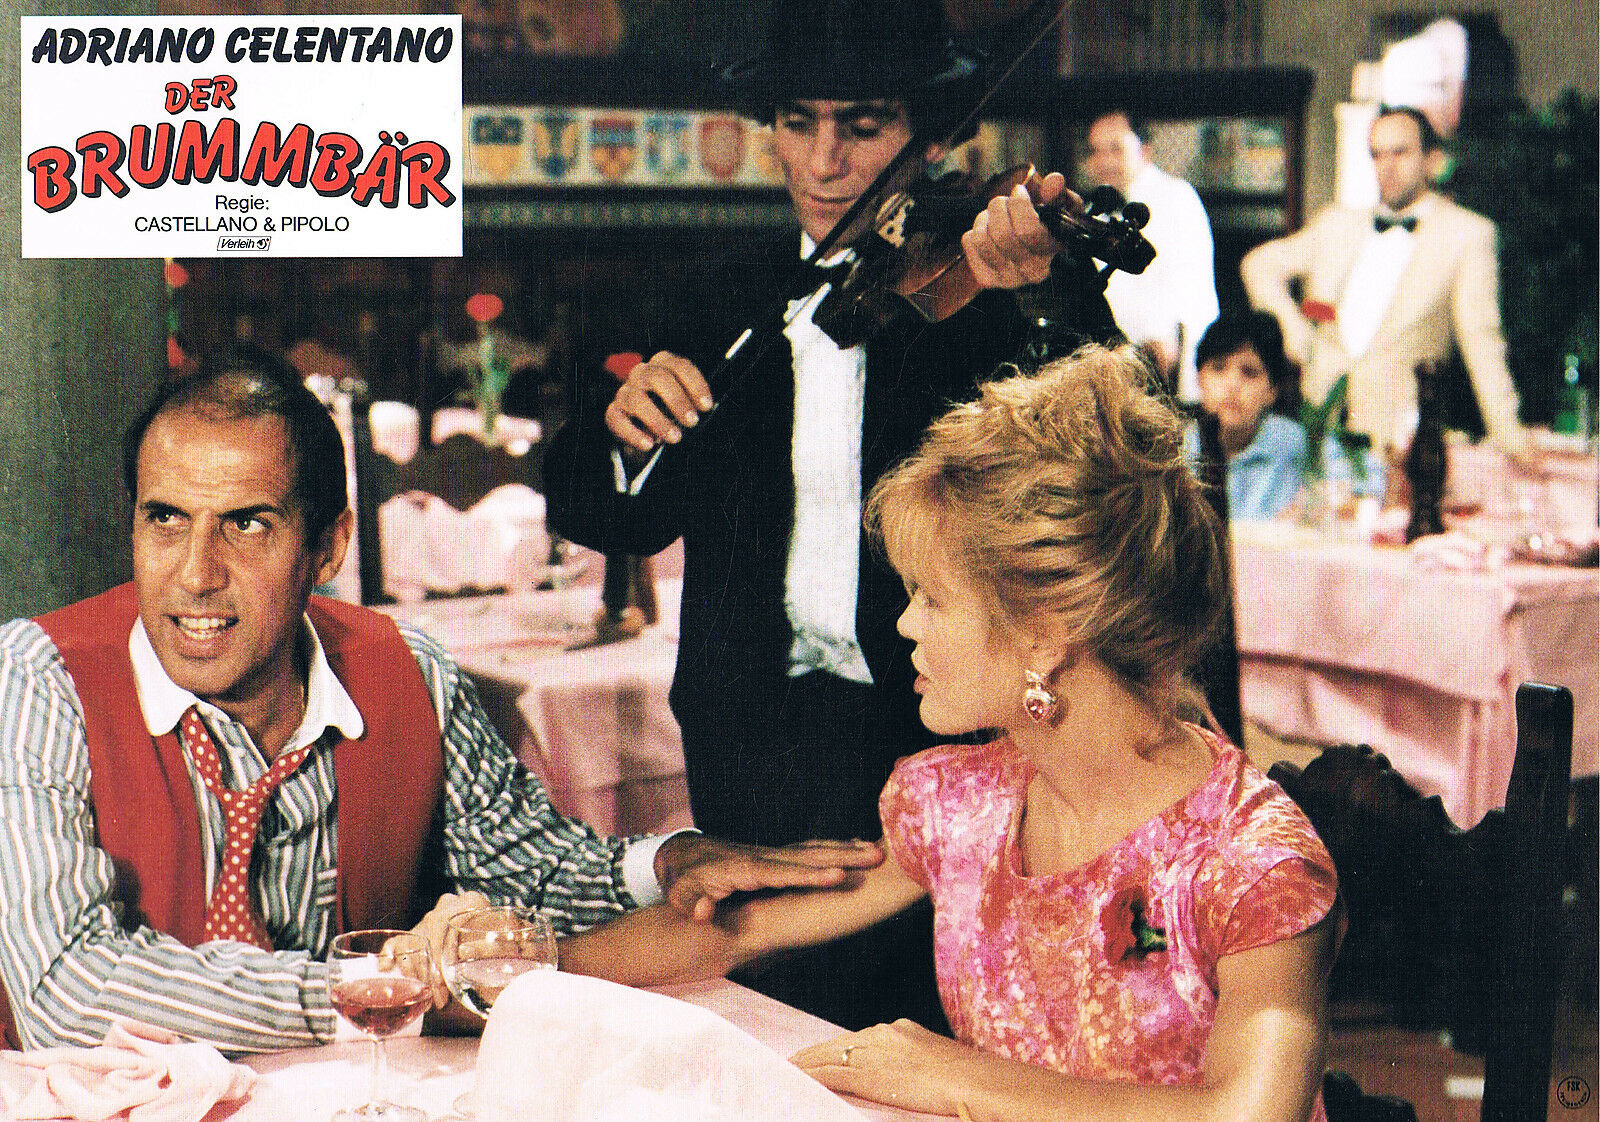 Il burbero (1986) Screenshot 2 